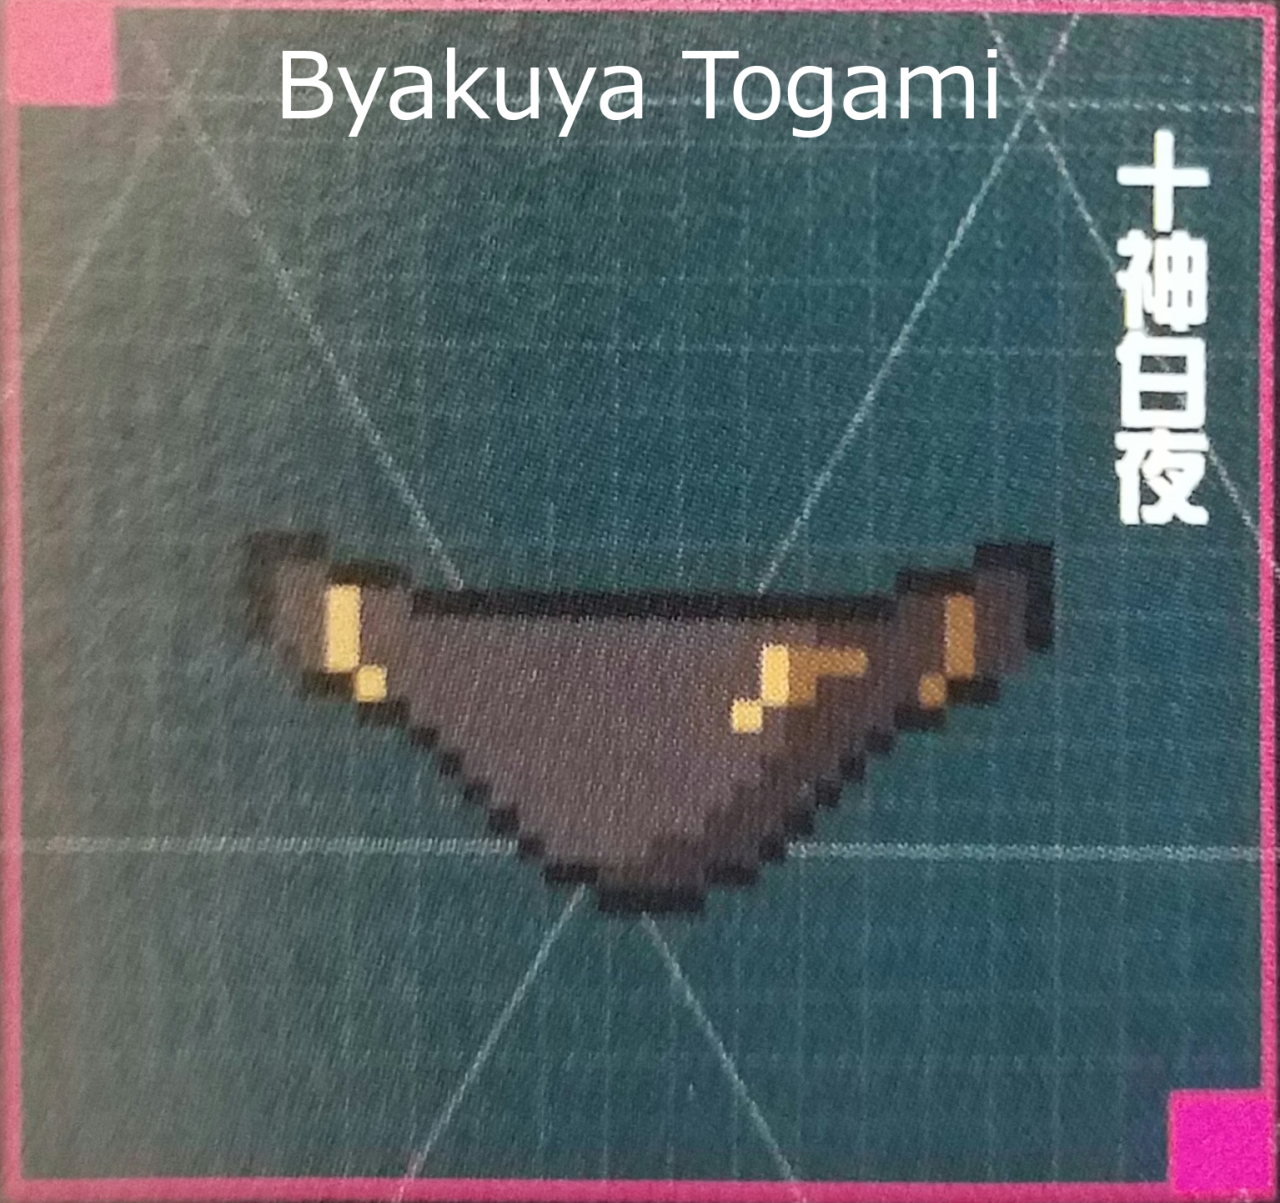 Gundham Tanaka Underwear 新しい壁紙明けましておめでとうございます21hd